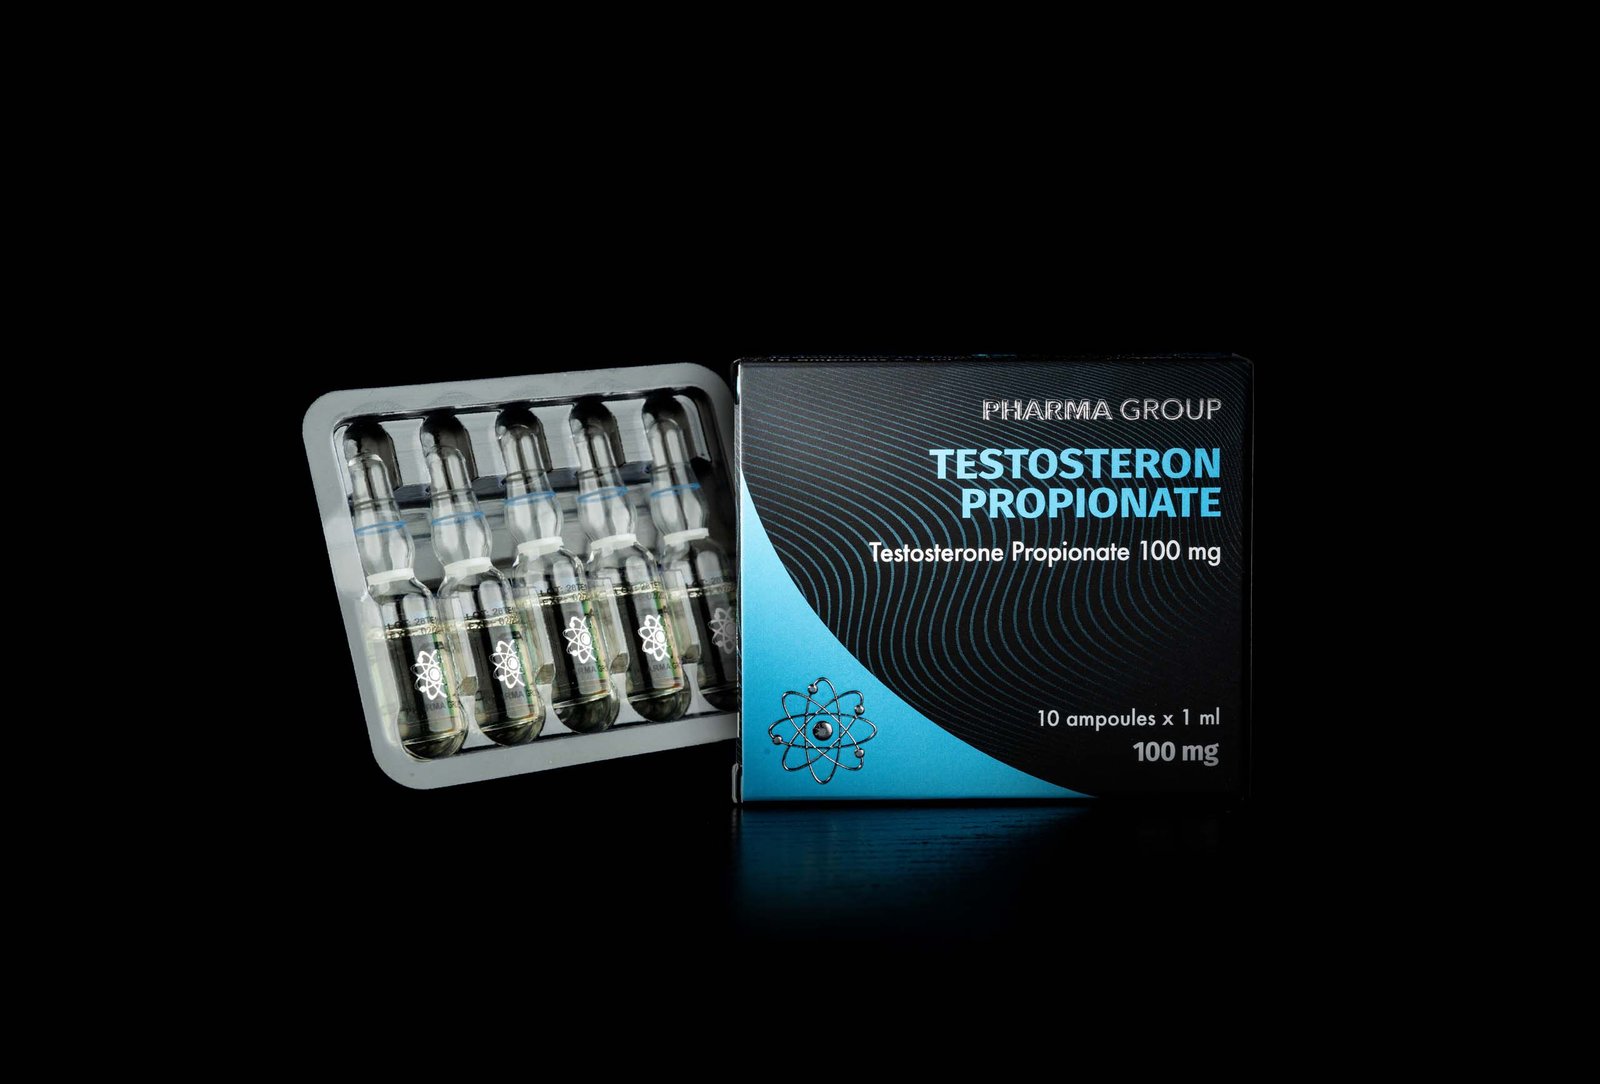 Pharma Group Testosteron Propionate 100